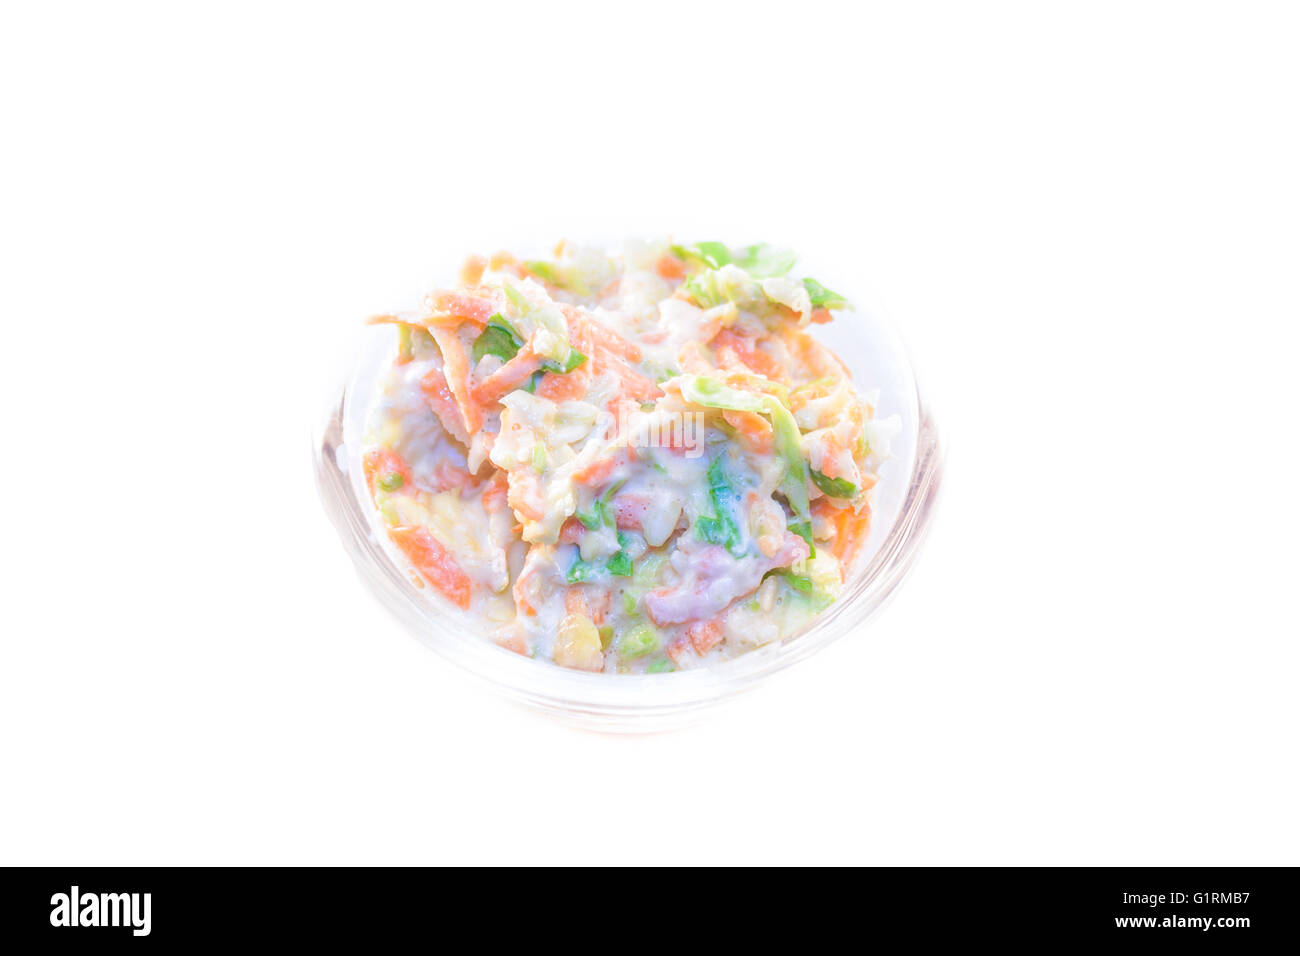 Un cuenco lleno de ensalada coleslaw, aislado sobre fondo blanco. Foto de stock